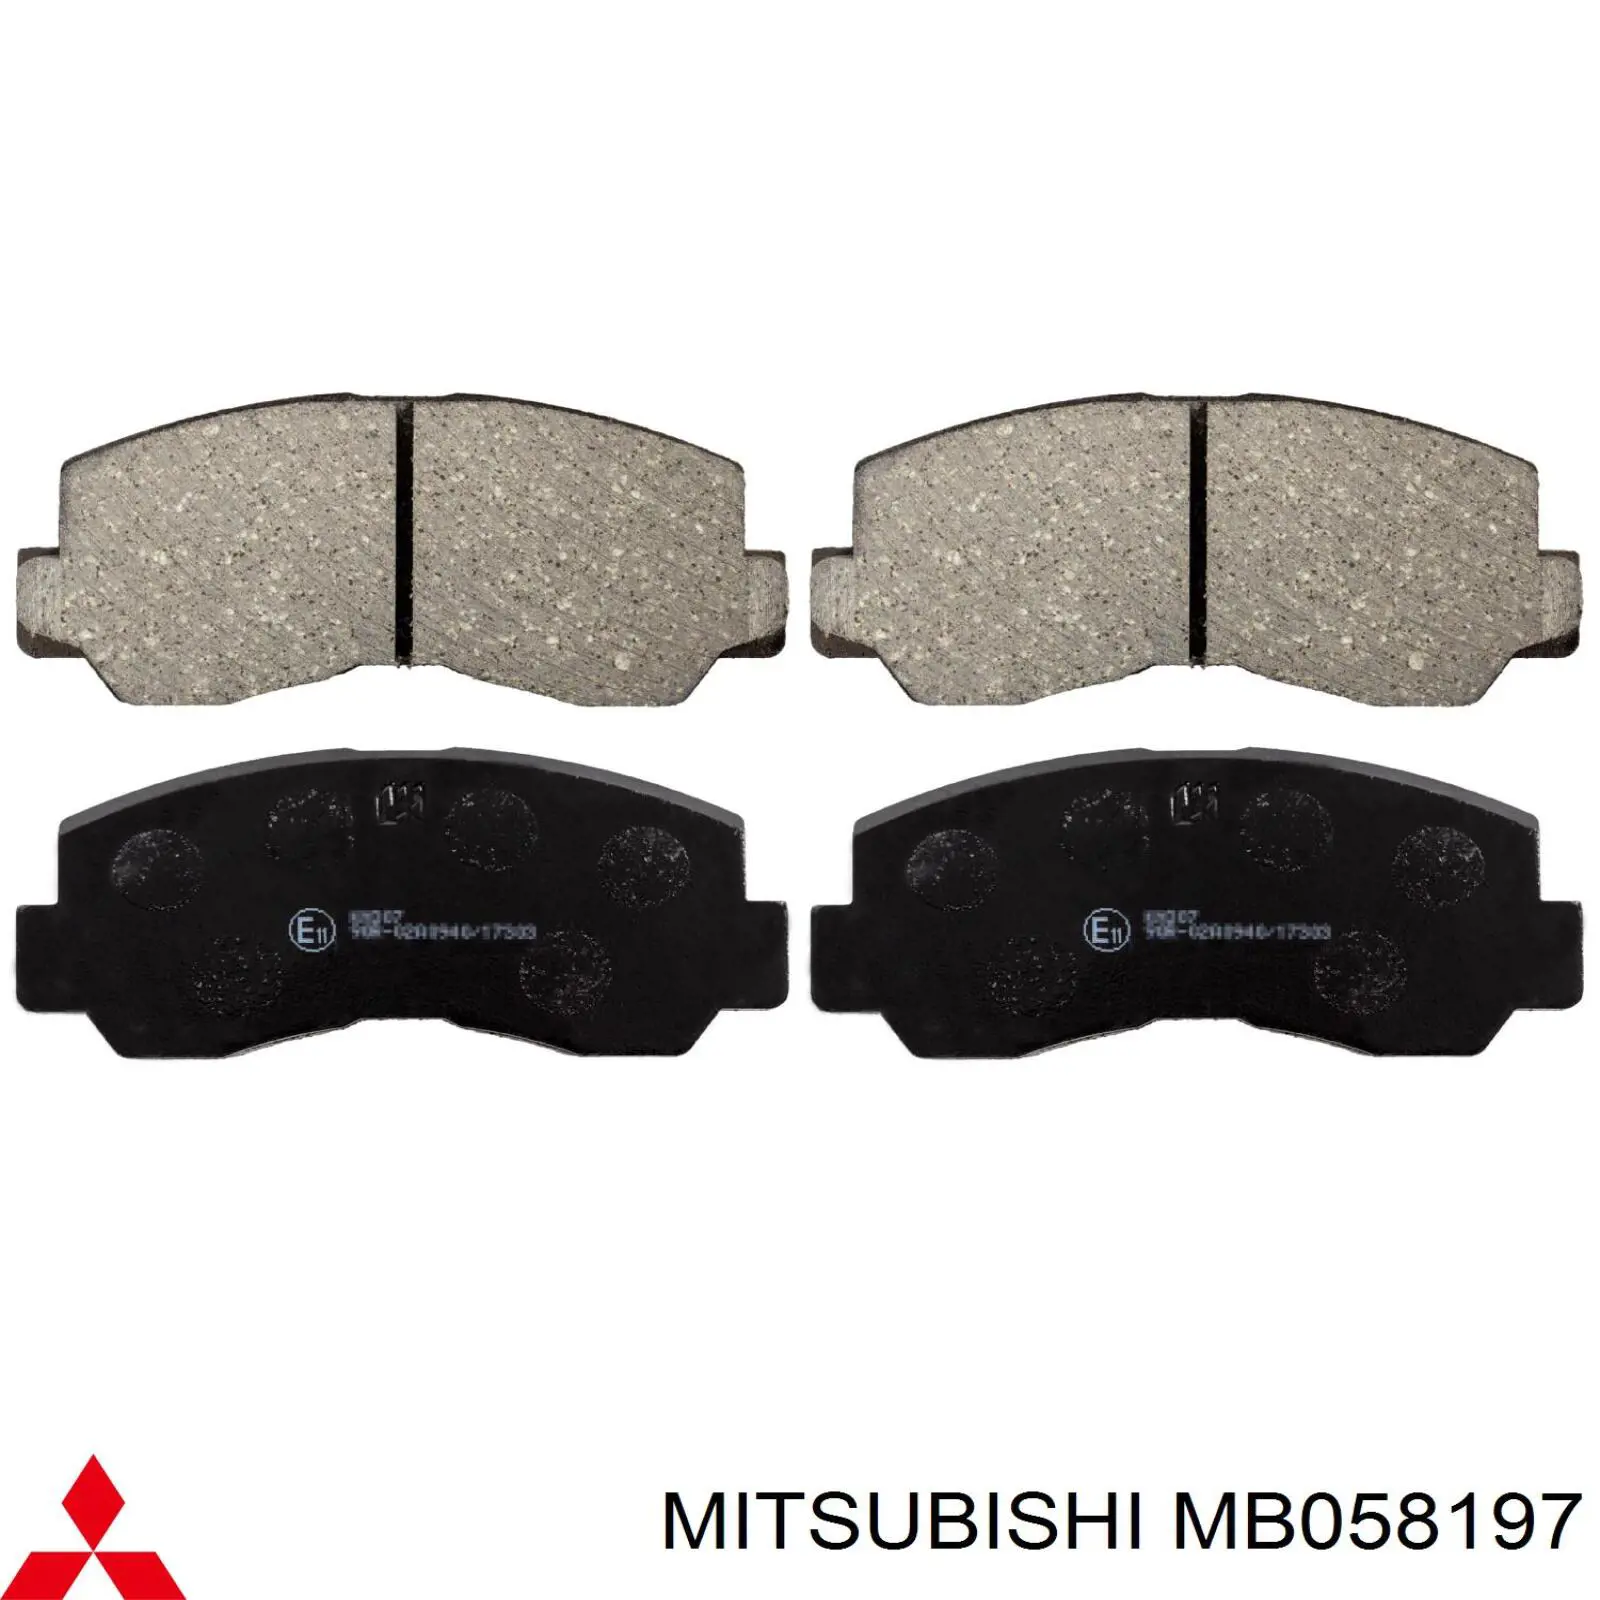 MB058197 Mitsubishi колодки тормозные передние дисковые